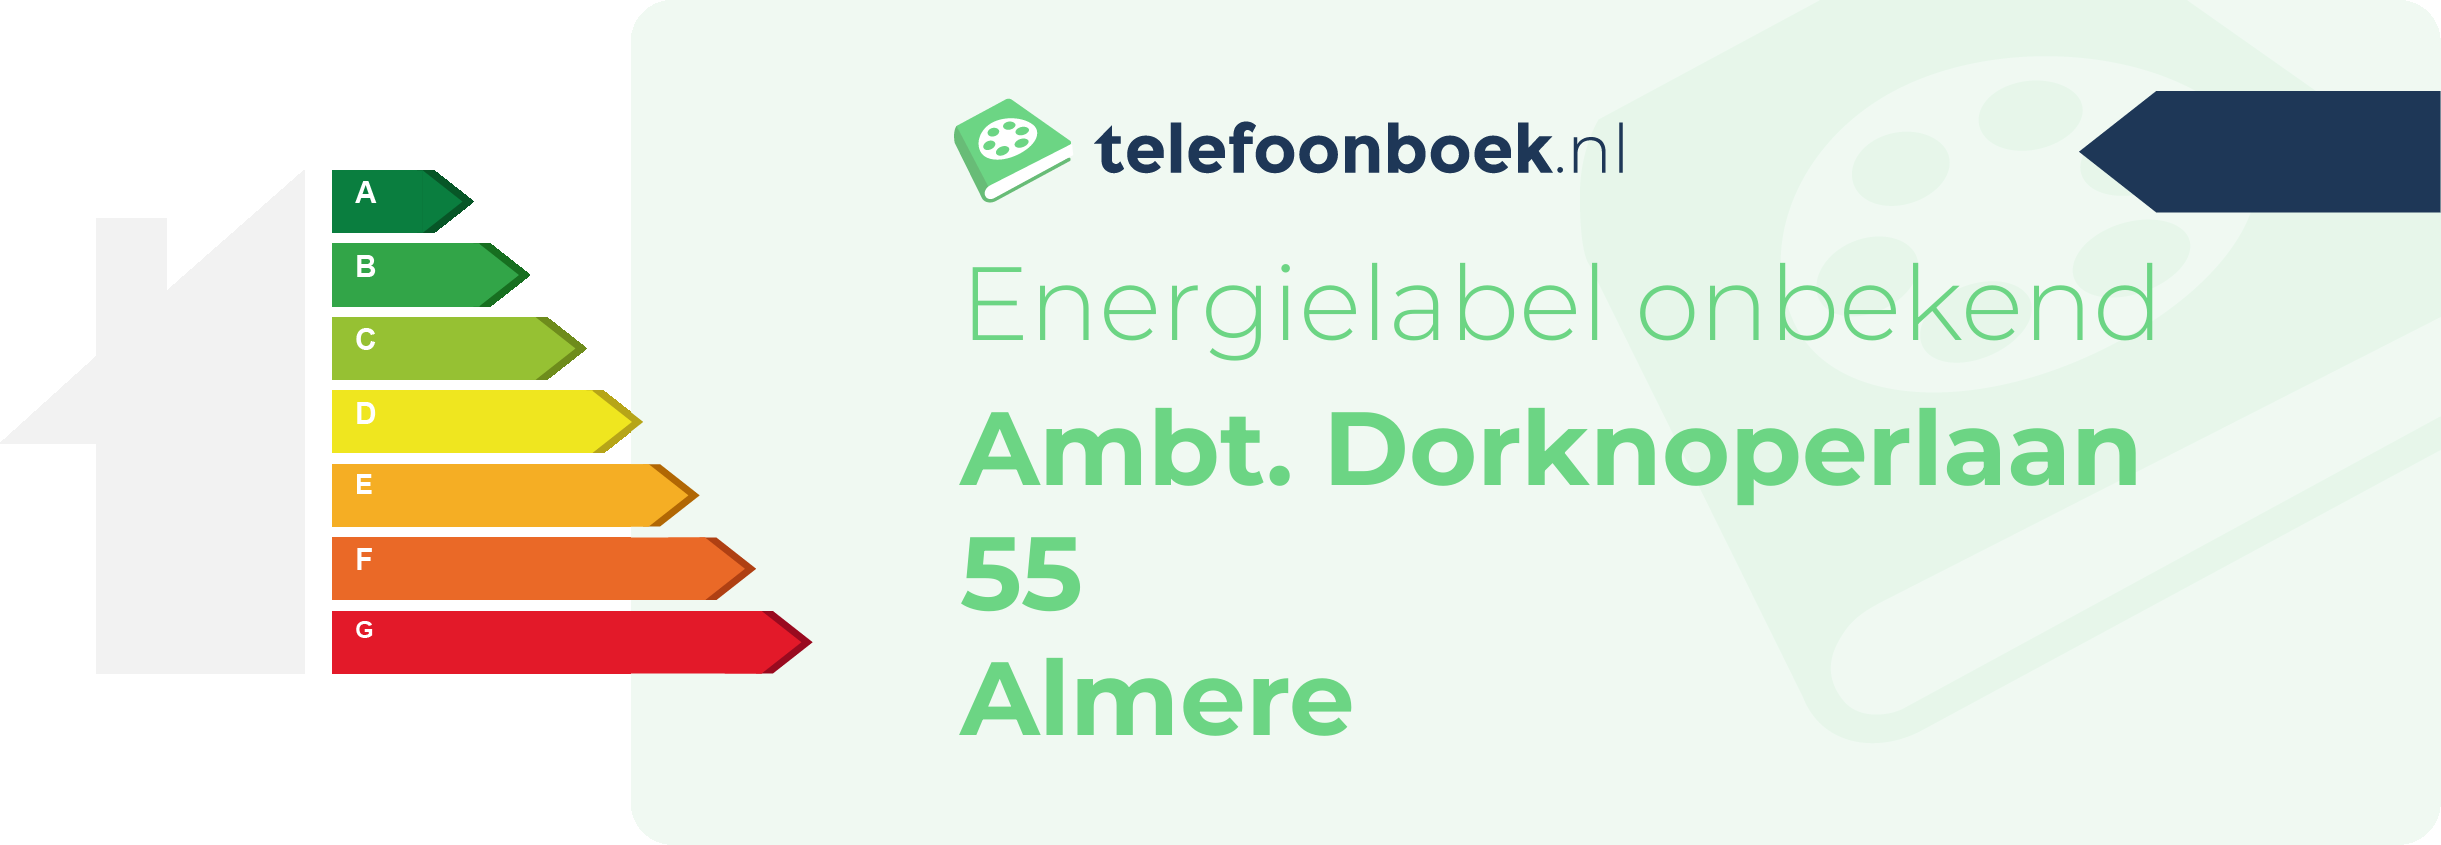 Energielabel Ambt. Dorknoperlaan 55 Almere